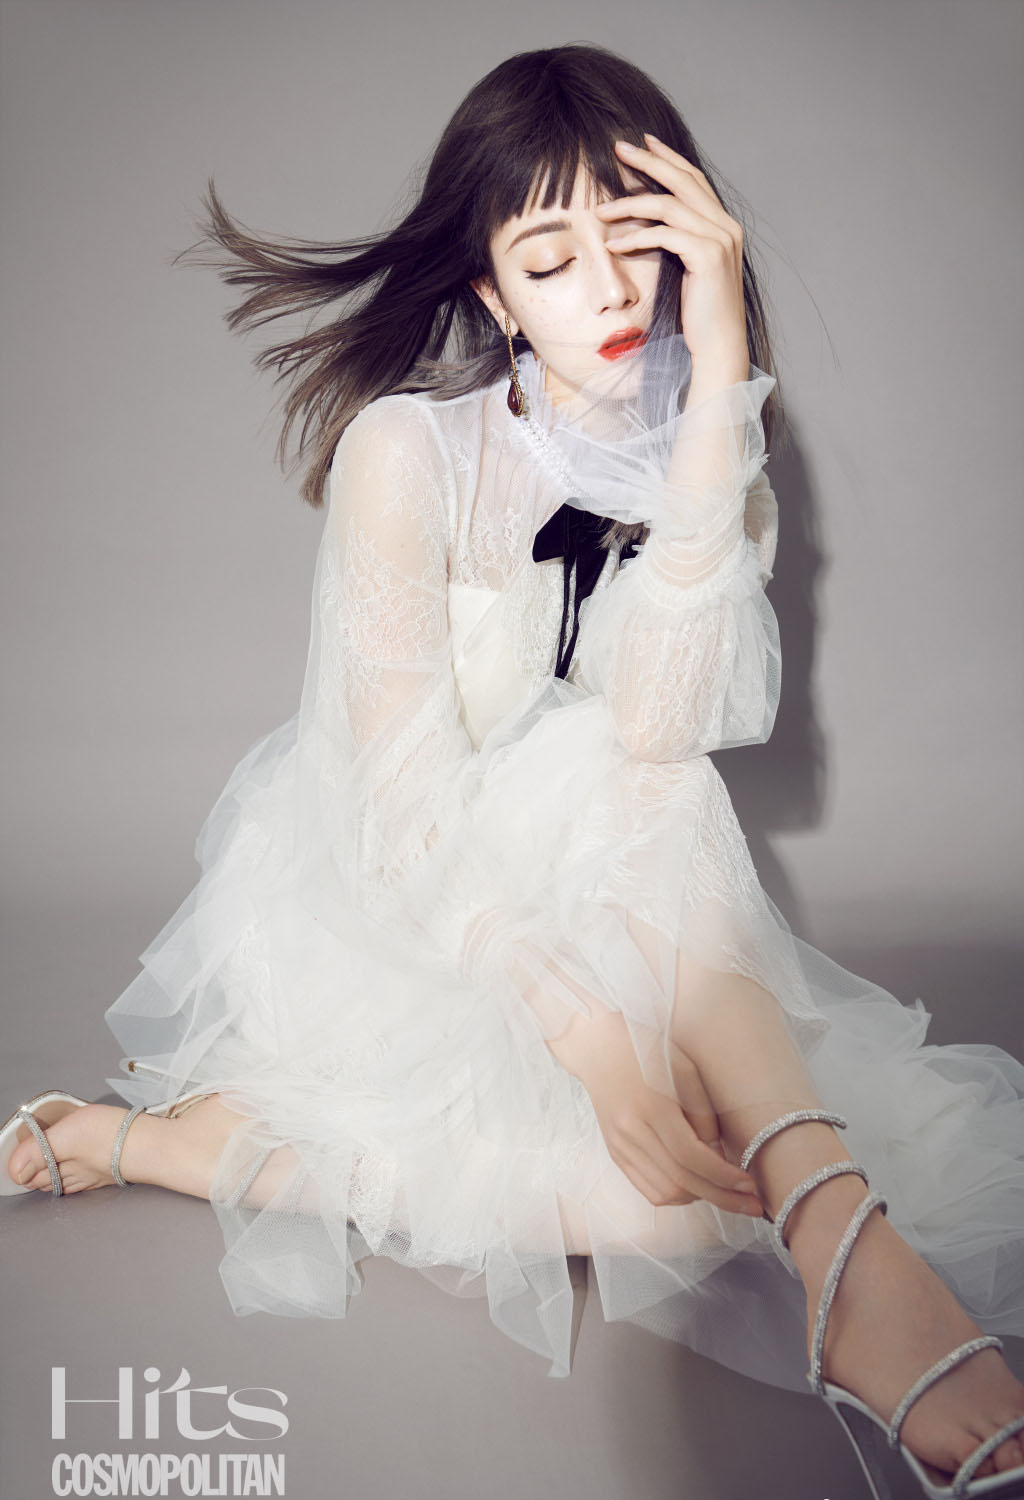 迪丽热巴齐刘海长发发型搭配“雀斑妆”酷美时尚写真